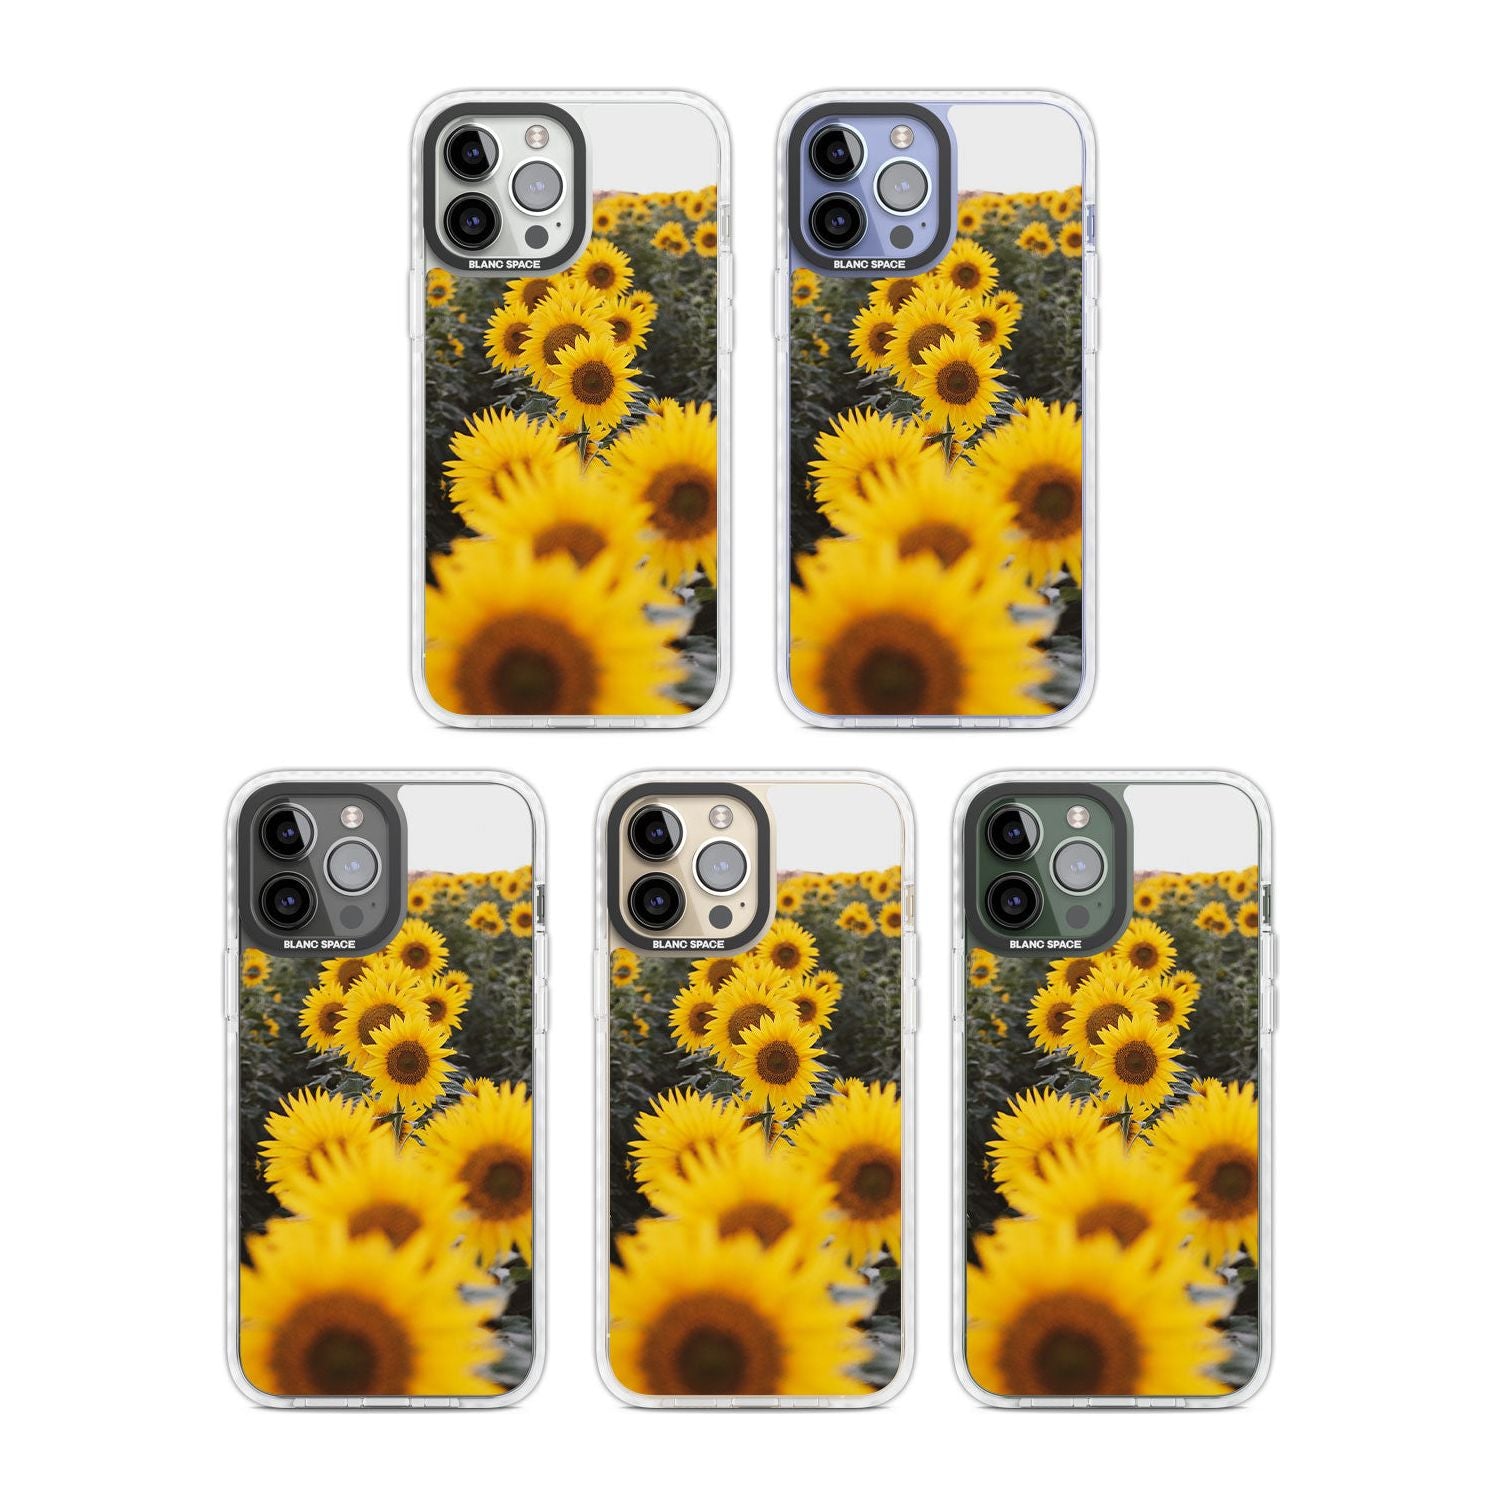 Sunflower Field Photograph